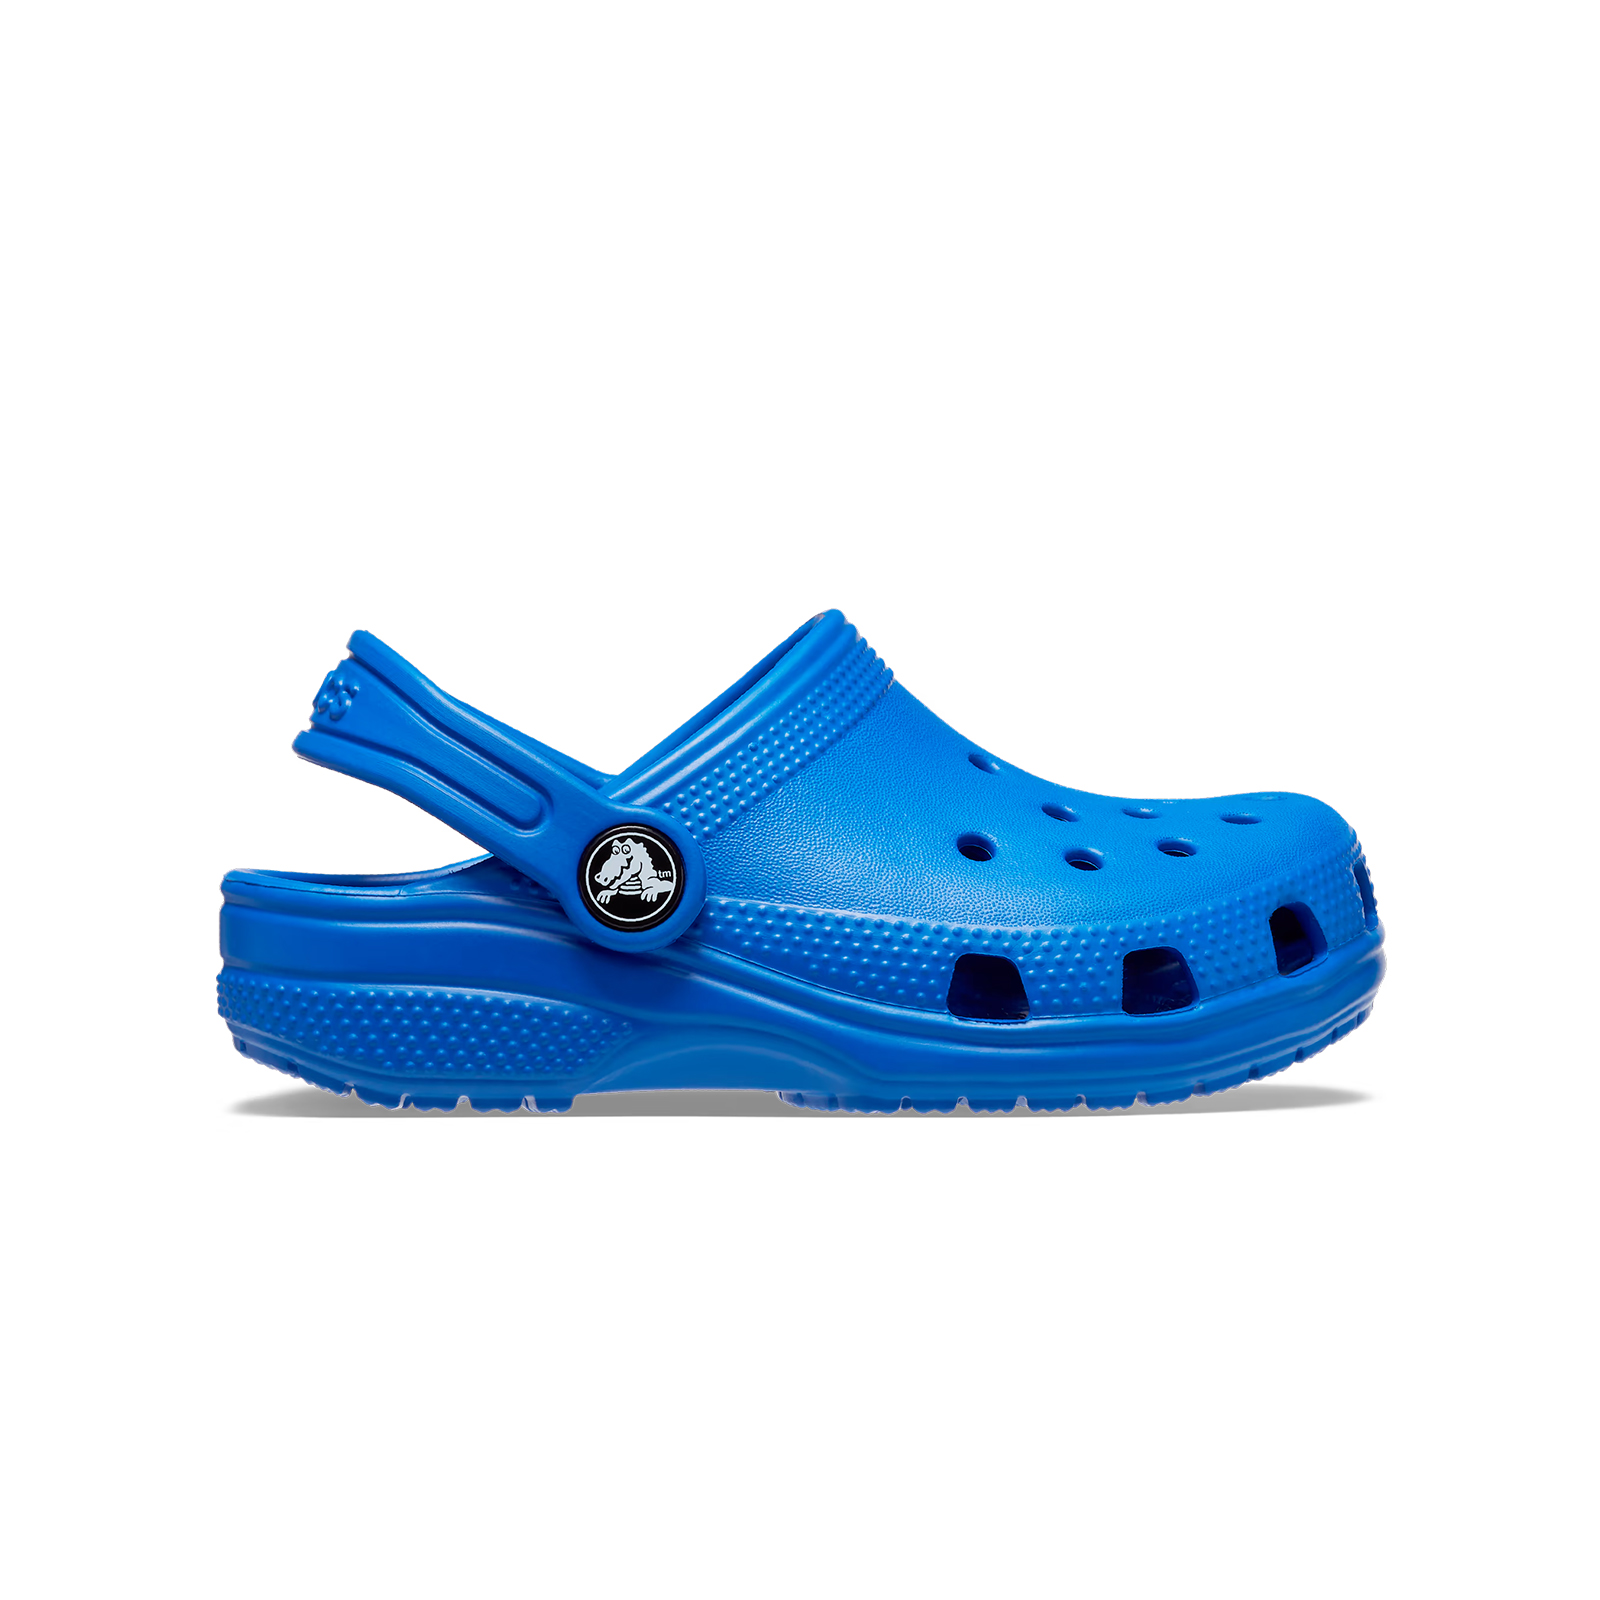 Παιδικά > Παπούτσια > Clogs > Glogs Crocs - CLASSIC CLOG T - BLUE BOLT